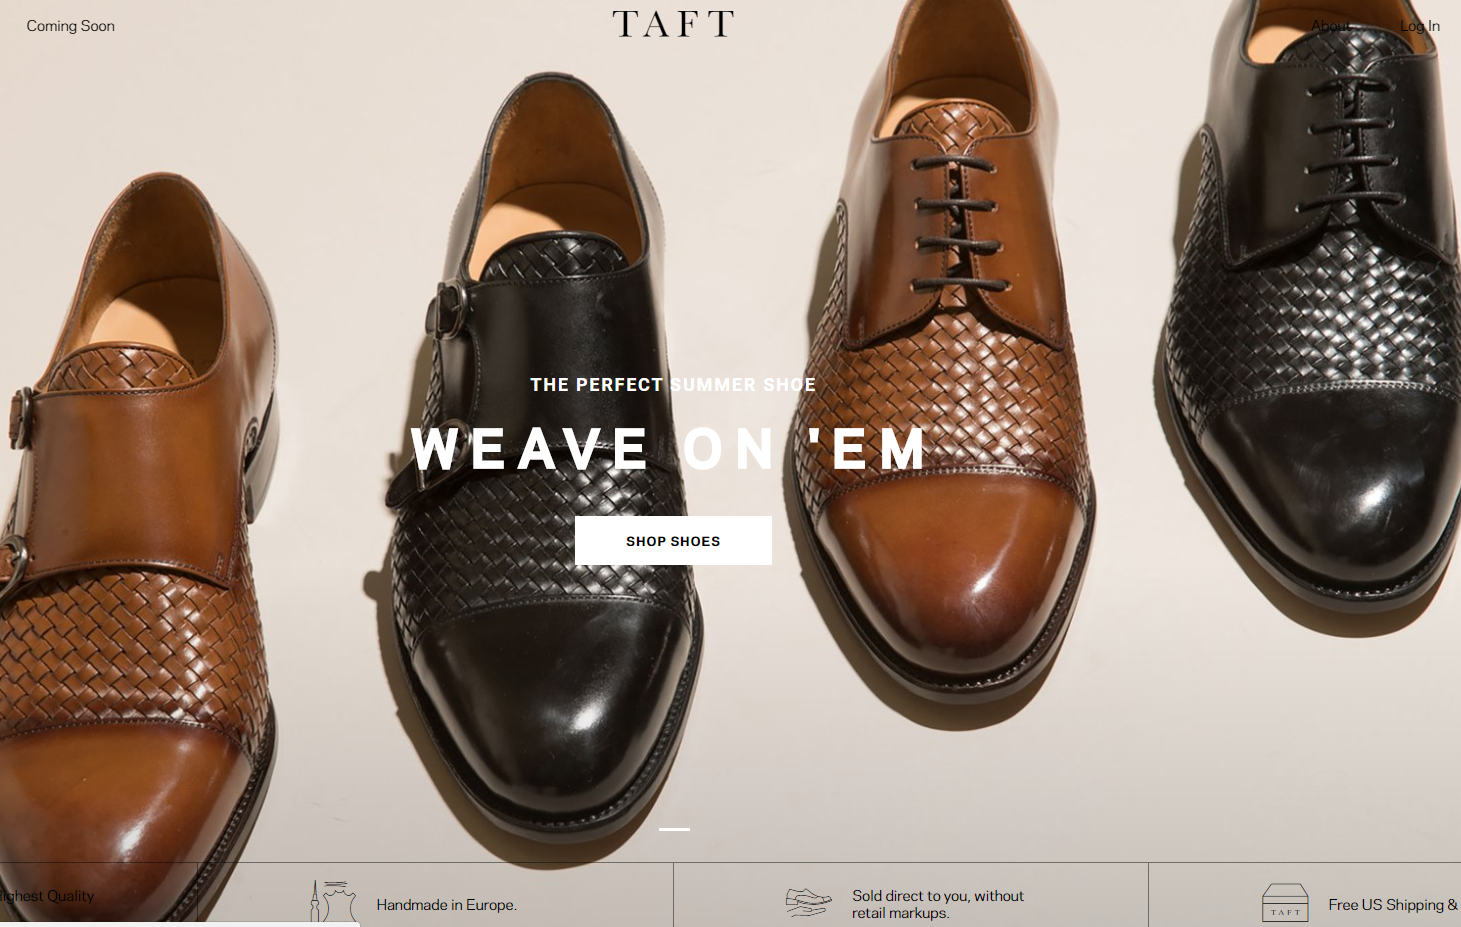 互联网轻奢男鞋品牌 TAFT 完成500万美元种子轮融资，NBA明星韦德参投